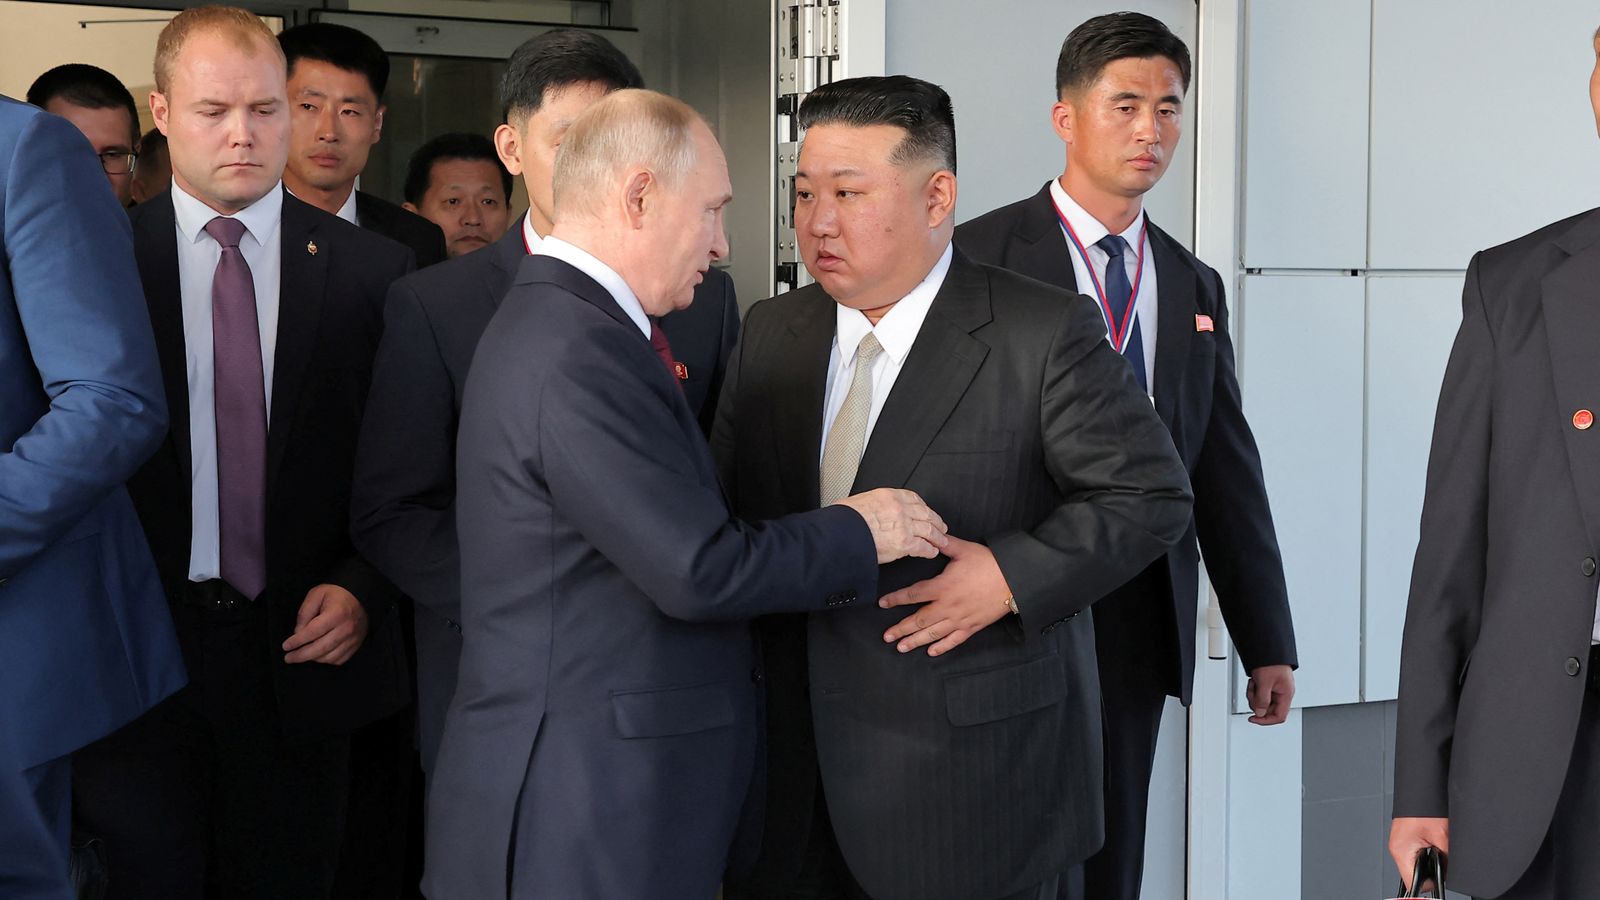 Vladimir Putin vďačne prijal pozvanie Kim Čong-una na návštevu Severnej Kórey  Svetové novinky